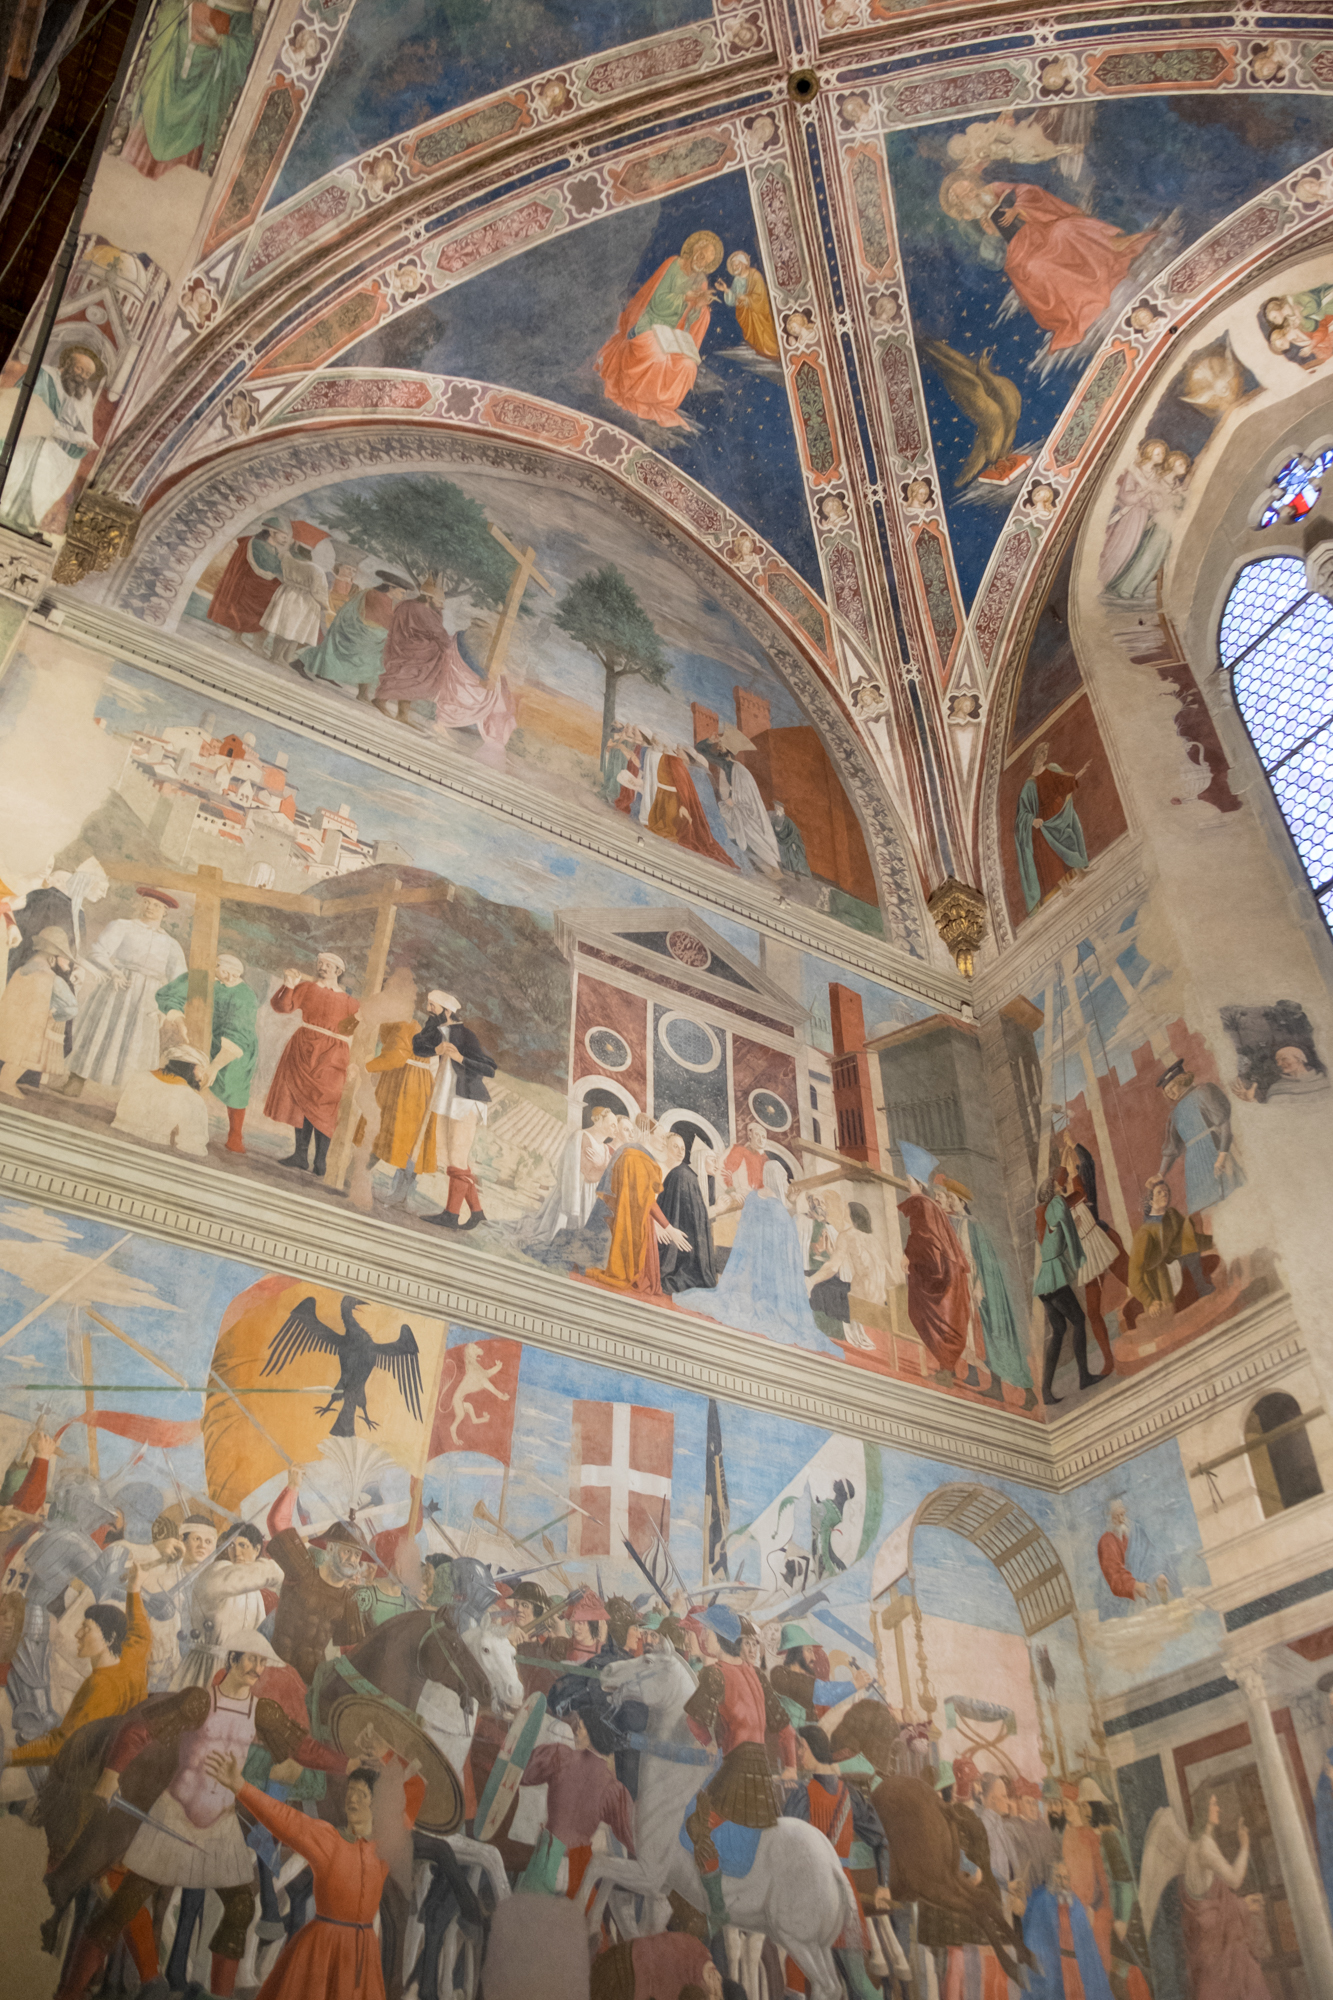 The Legend of the True Cross by Piero della Francesca